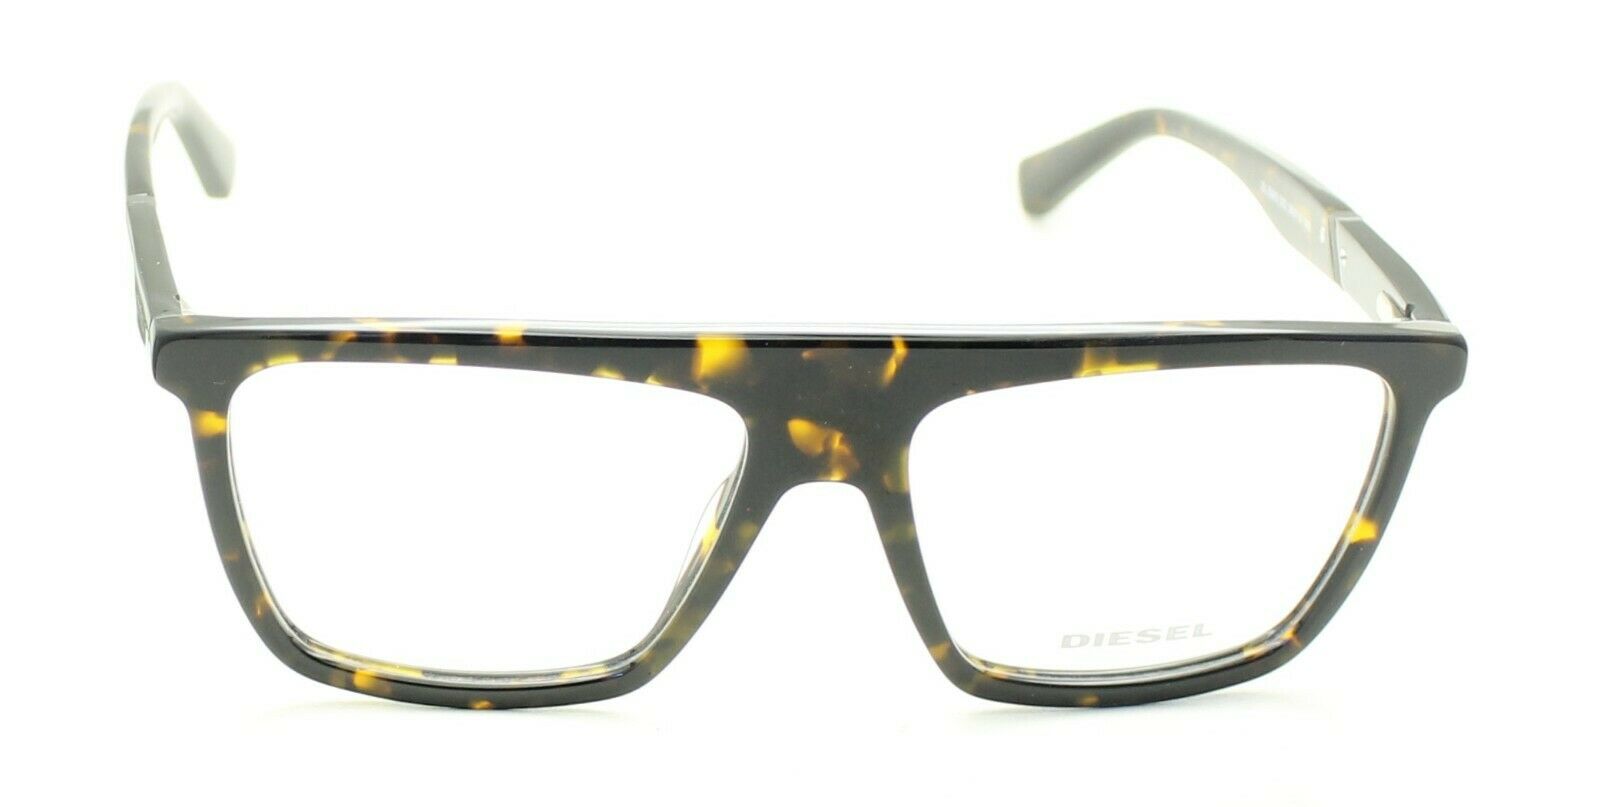 DIESEL DL5369 052 56mm Eyewear FRAMES RX Optical Eyeglasses Glasses New TRUSTED